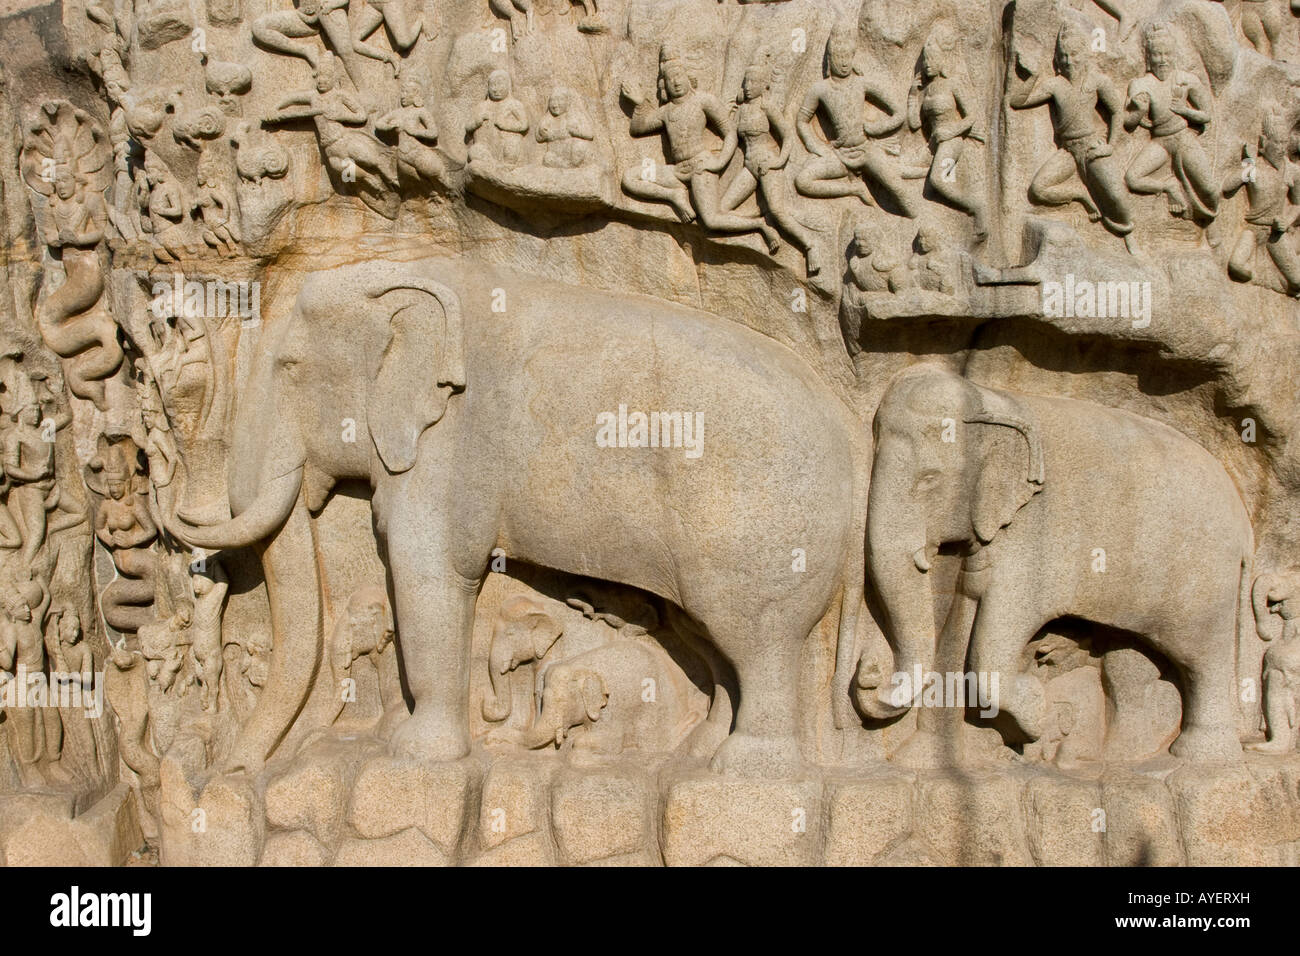 Arjunas penitenza sculture a bassorilievo in pietra a Mamallapuram India del Sud Foto Stock